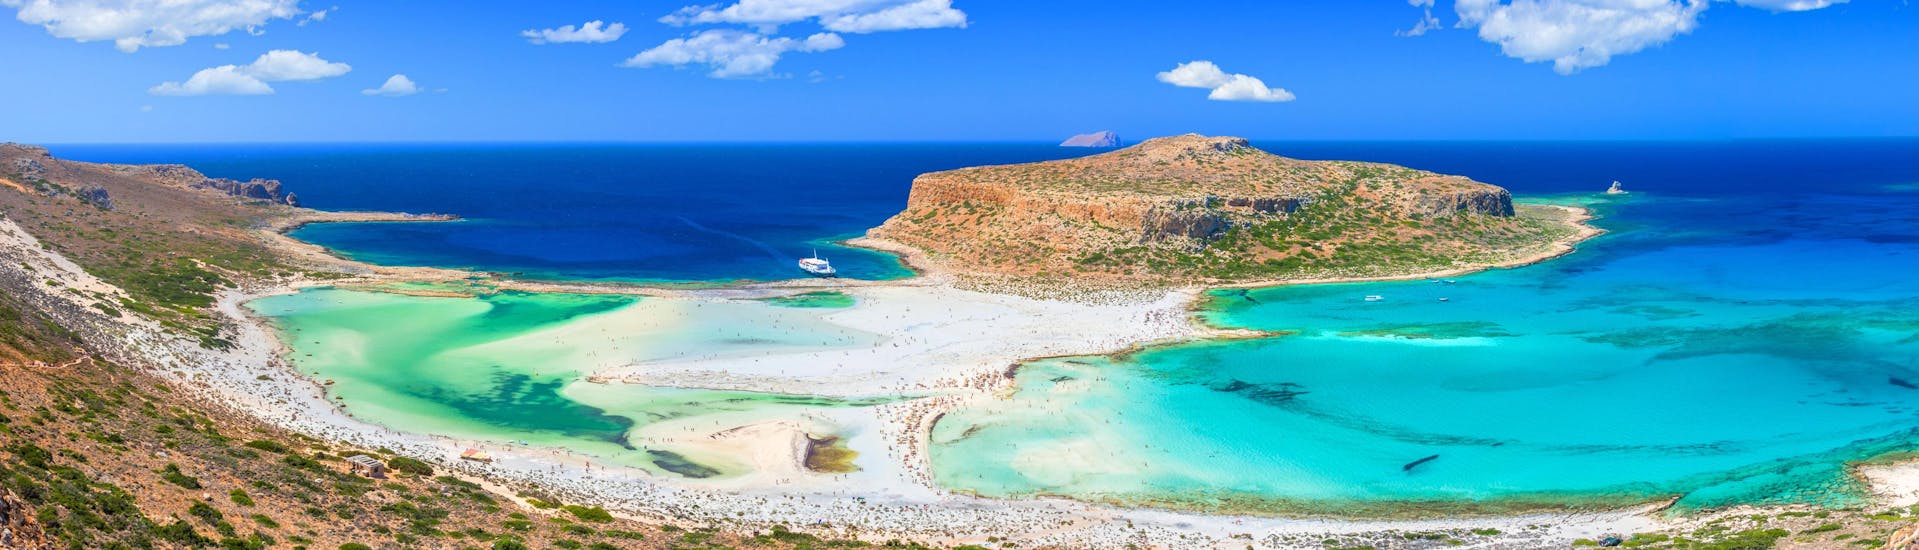 Schöner Strand von Balos mit der Insel Gramvousa.